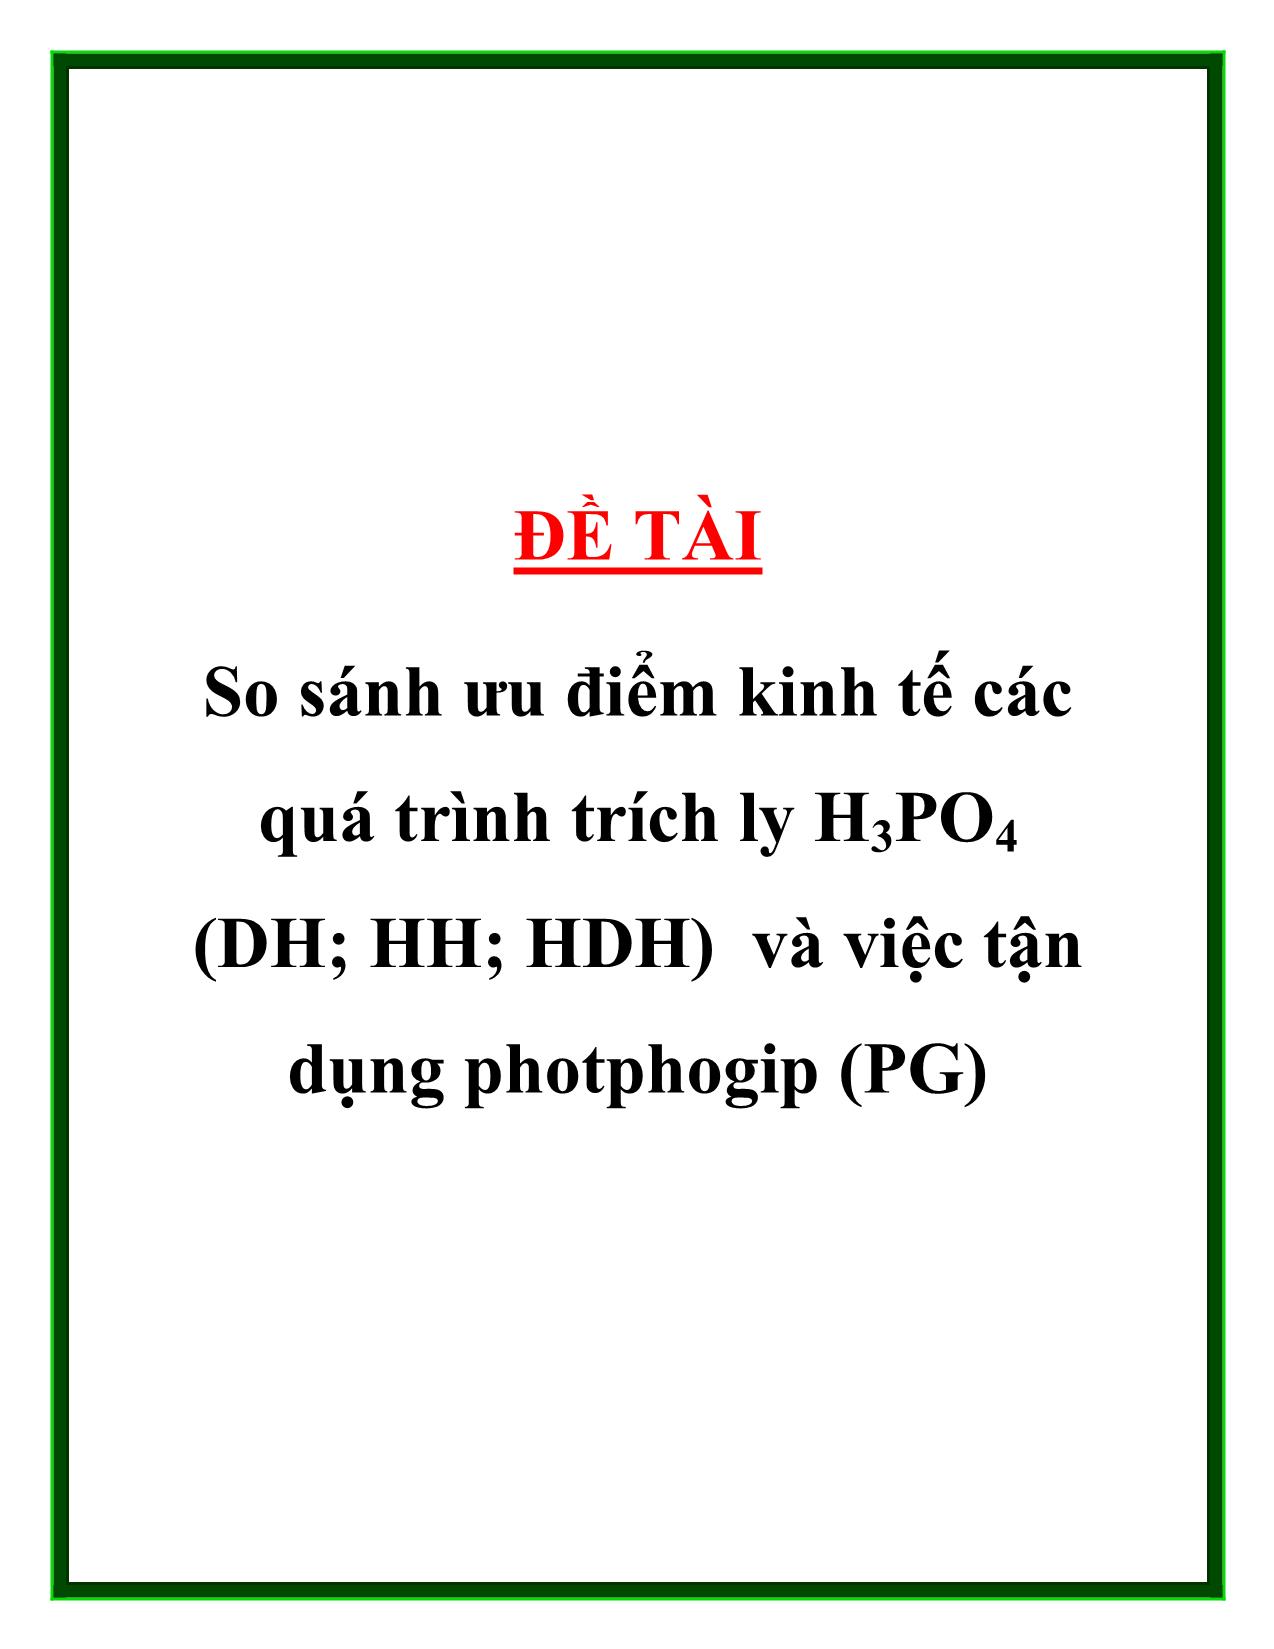 Đề tài So sánh ưu điểm kinh tếcác quá trình trích ly H3PO4 (DH; HH; HDH) và việc tận dụng photphogip (PG) trang 1